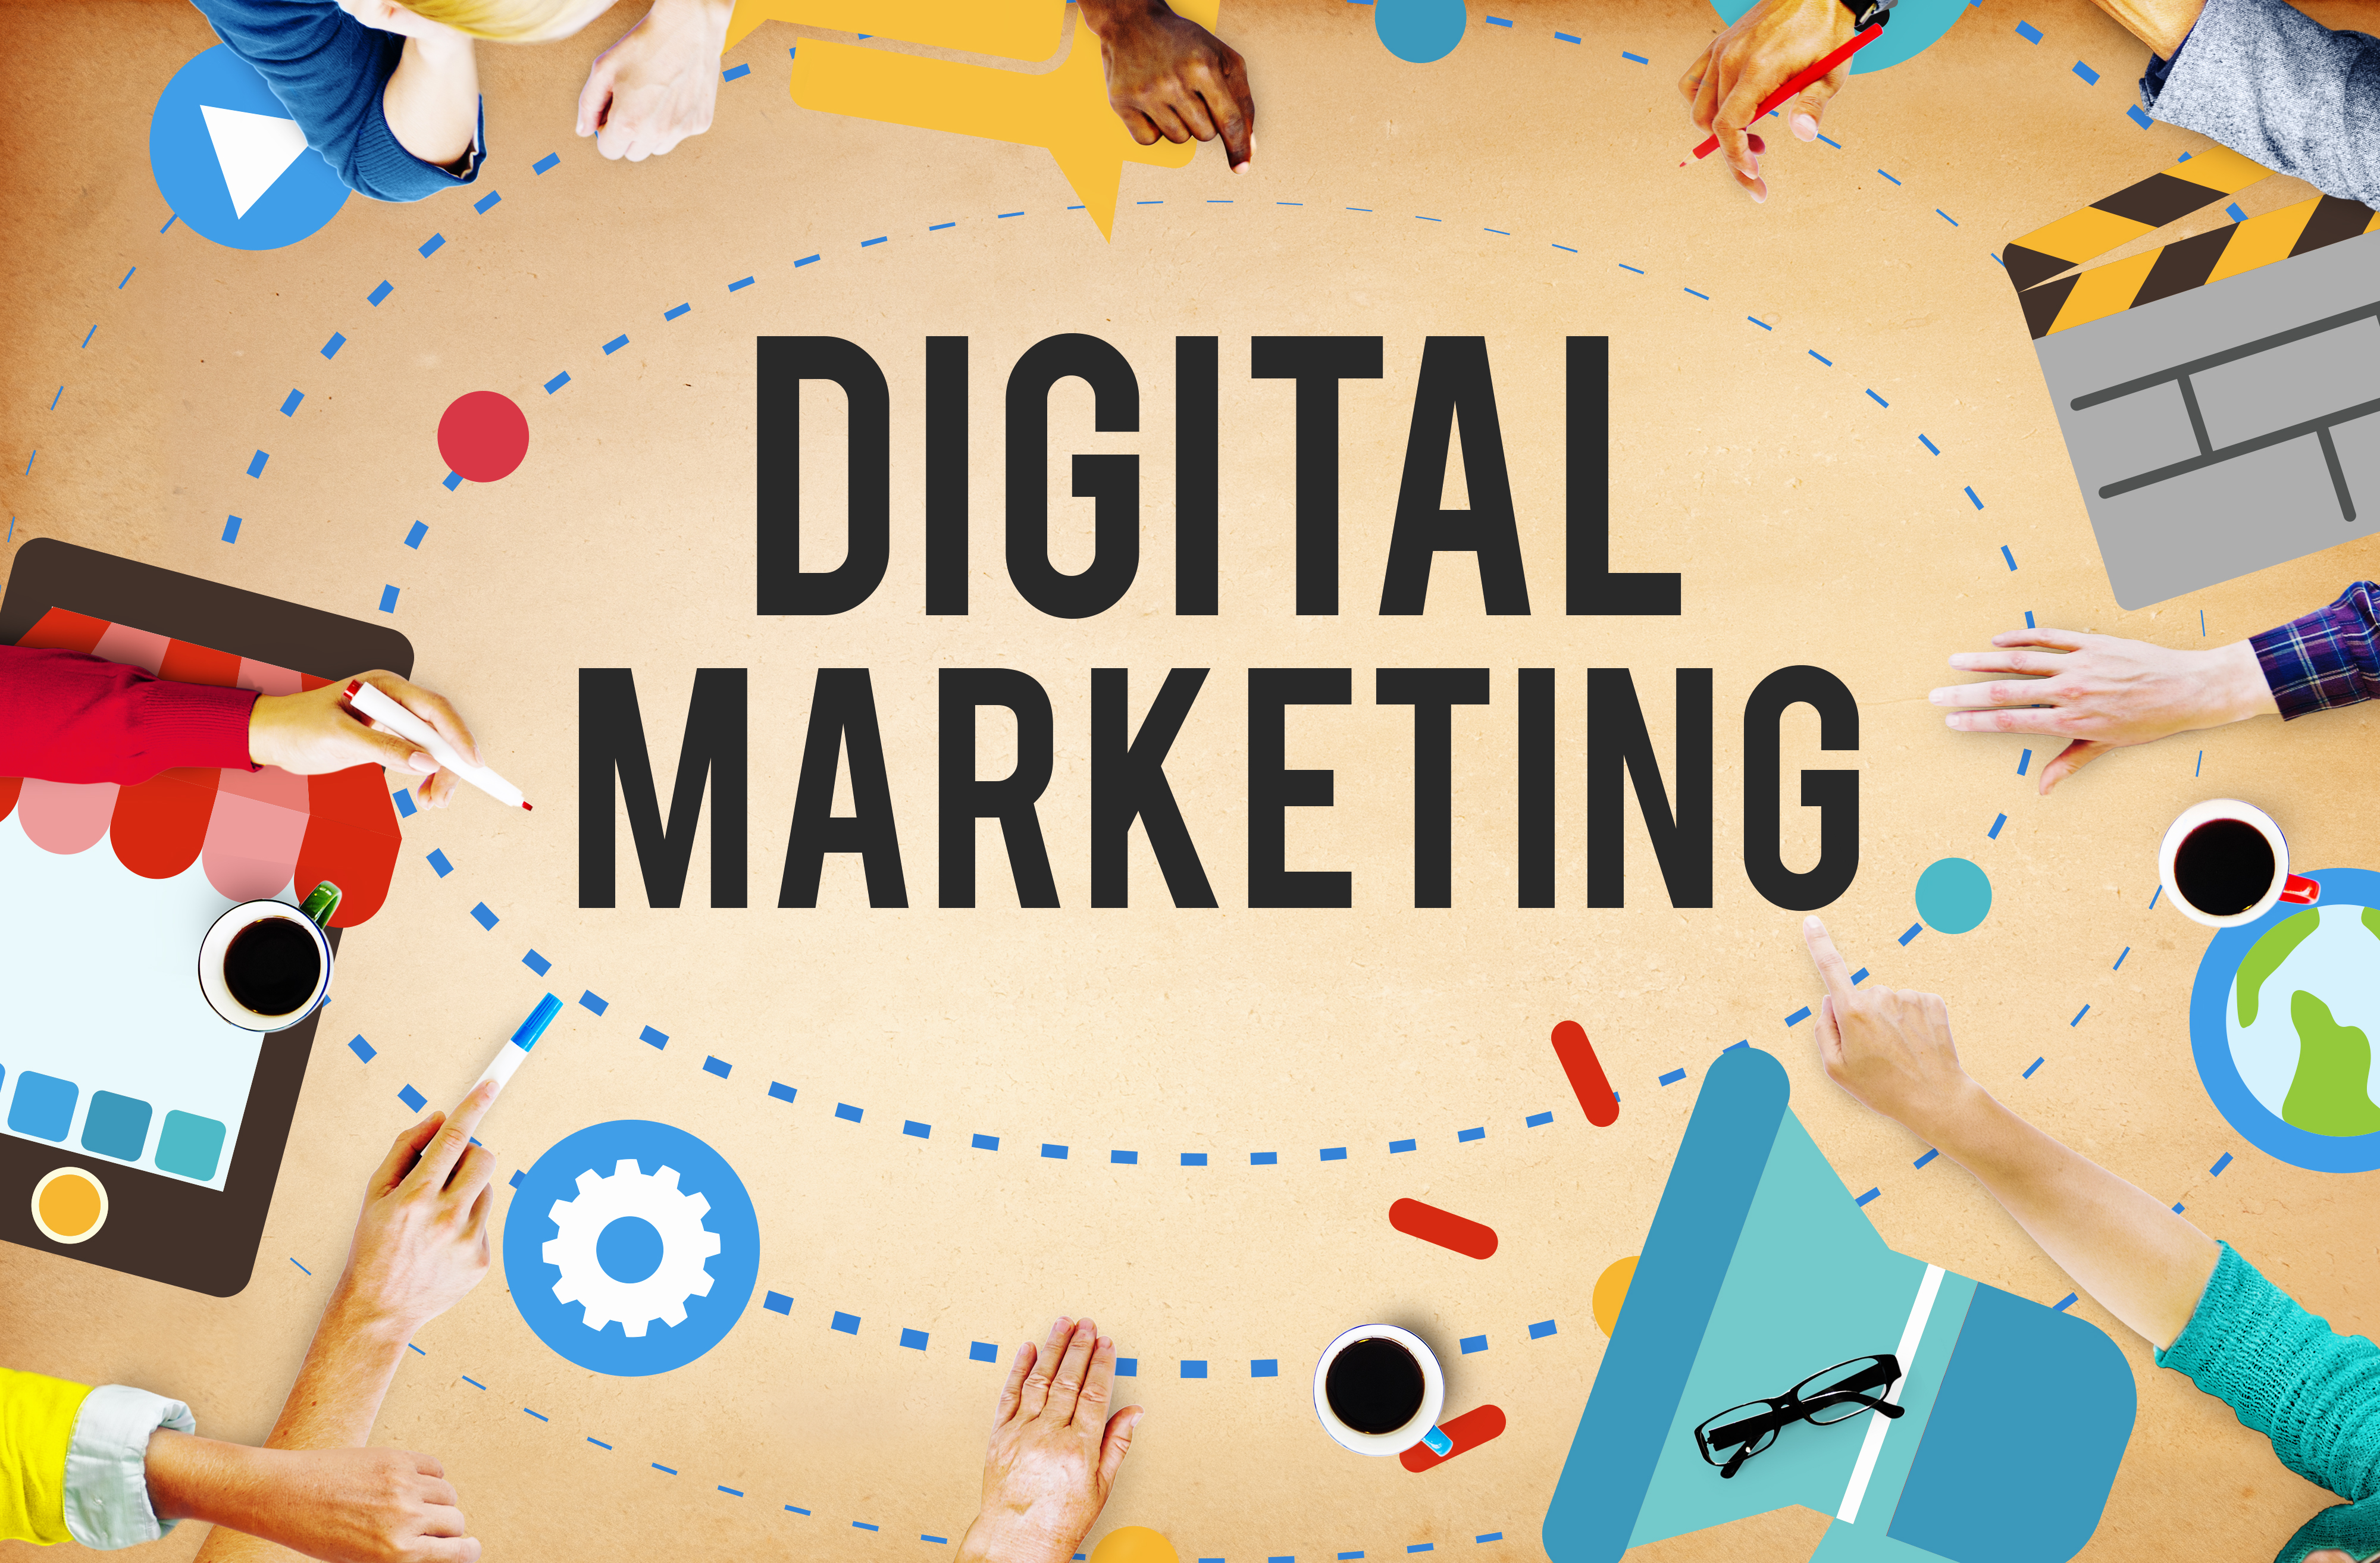 Vậy Digital Marketing là gì?